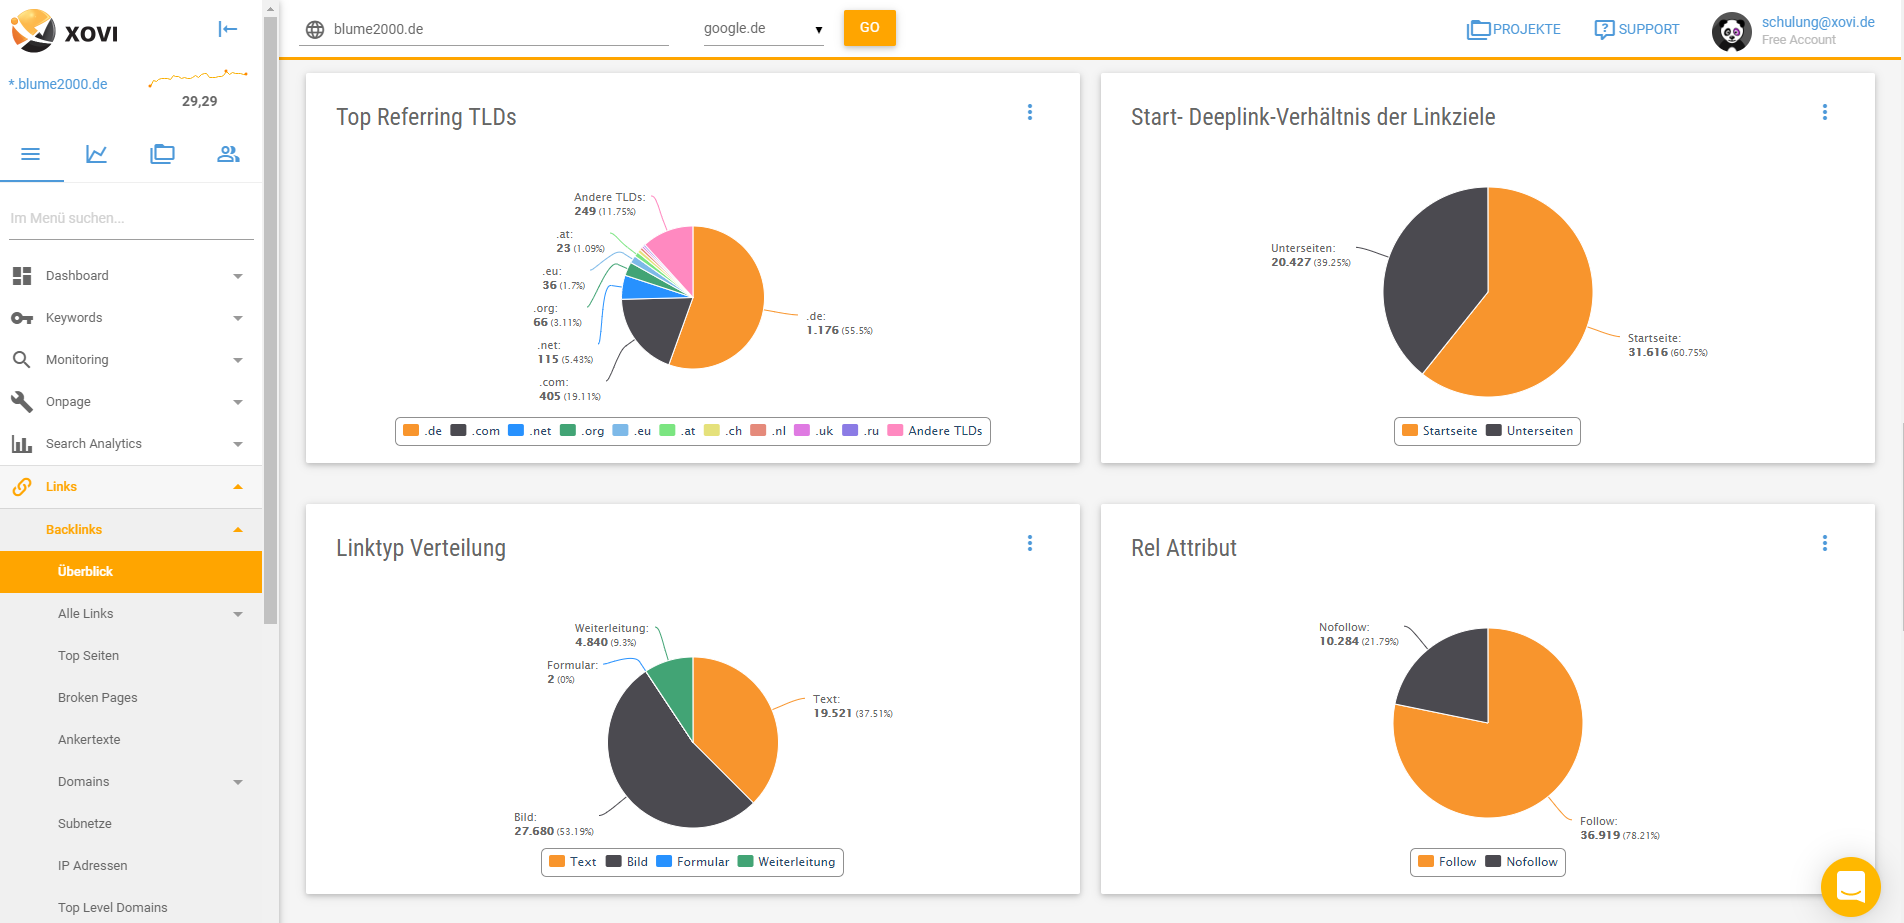 Die XOVI Suite liefert dir alle wichtigen Daten, die du zur Analyse eines Backlink-Profils benötigst